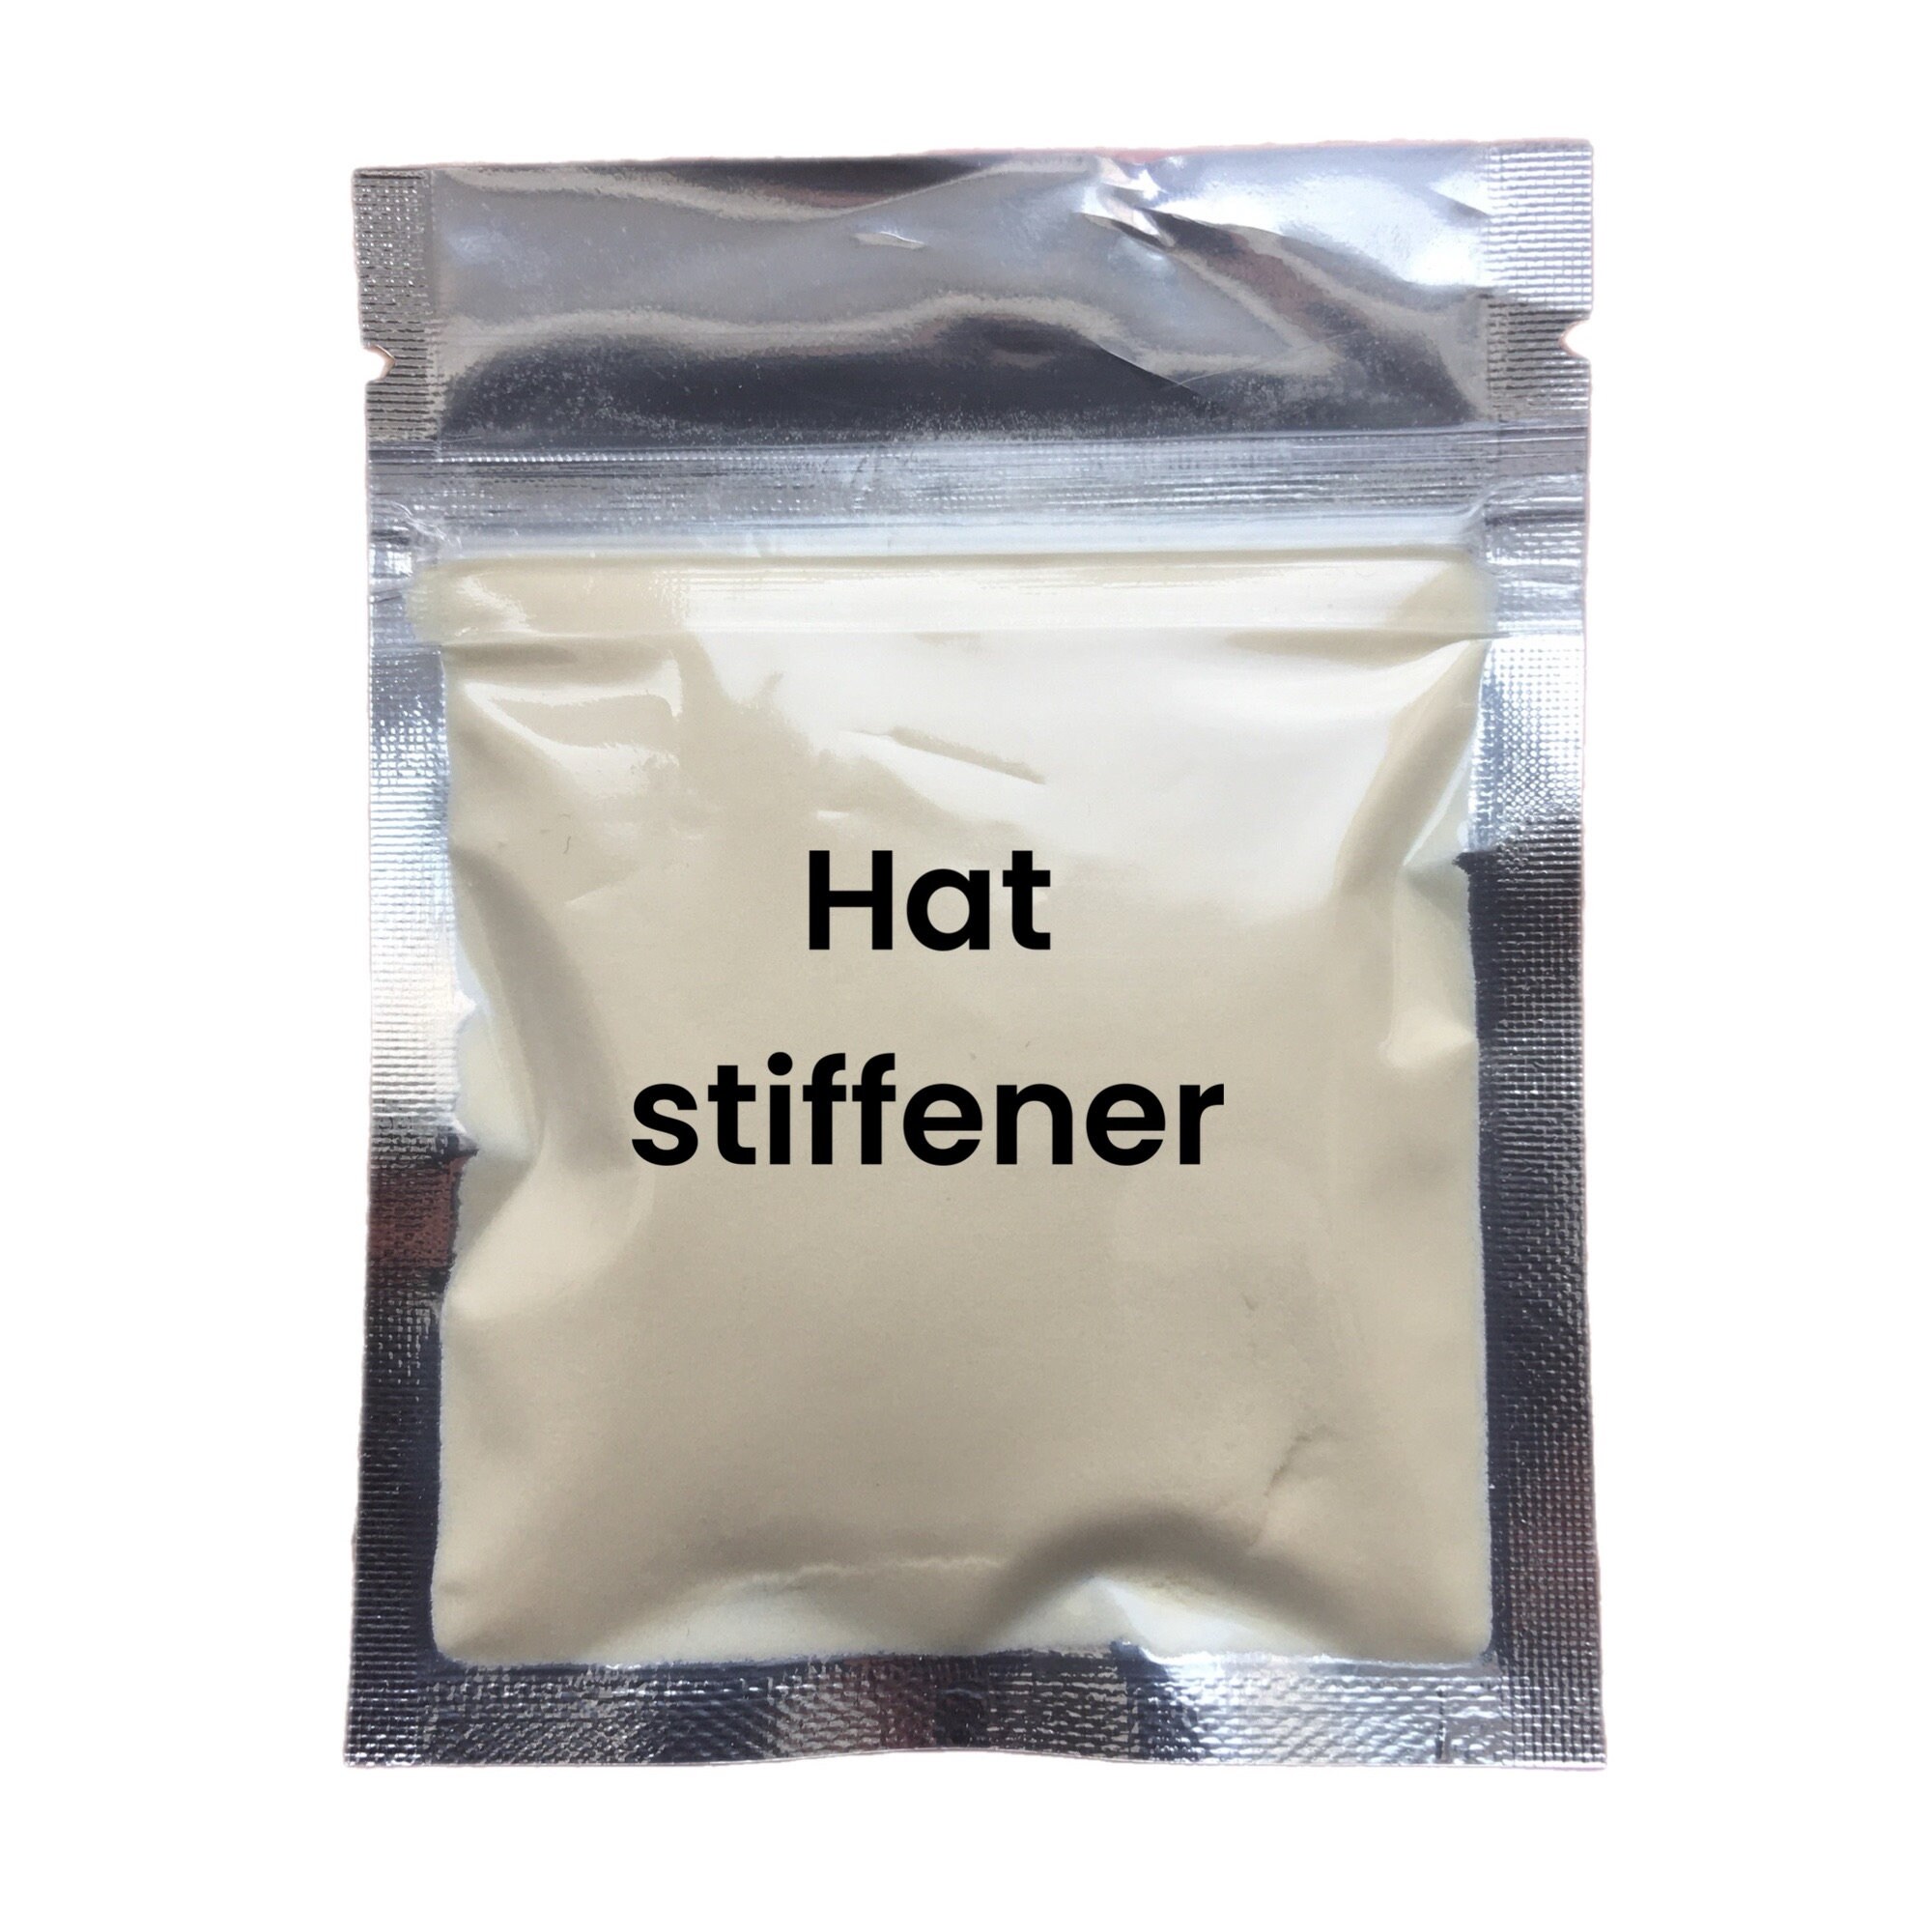 Sturdy Firm and Rigid Stiffener Powder for Quality Optimal Felt Support 